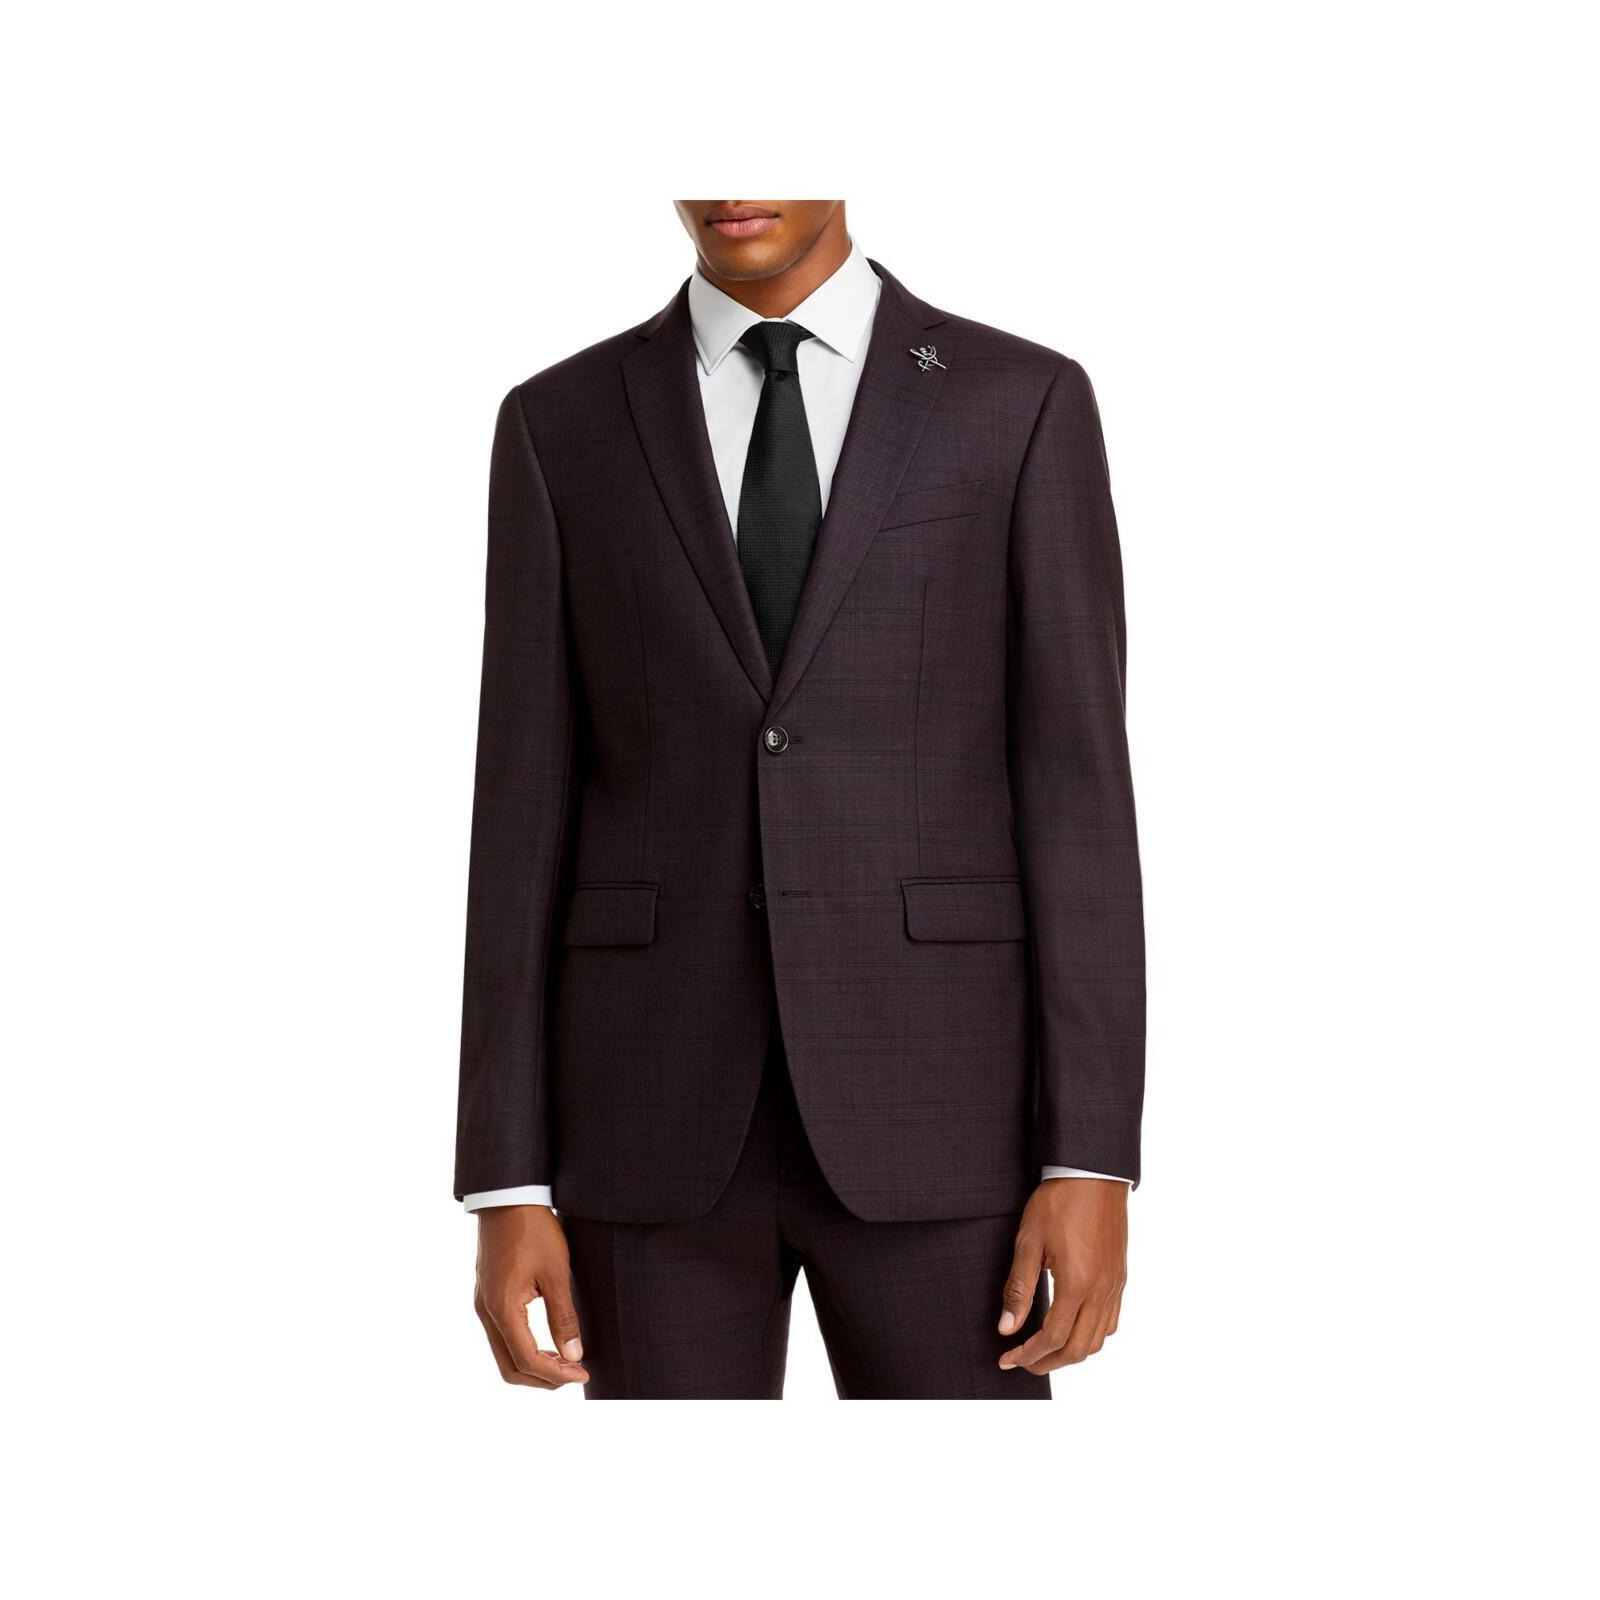 John Varvatos Mens Burgundy Plaid Slim Fit Wool Blend Suit Separate Blazer Jacket 36R